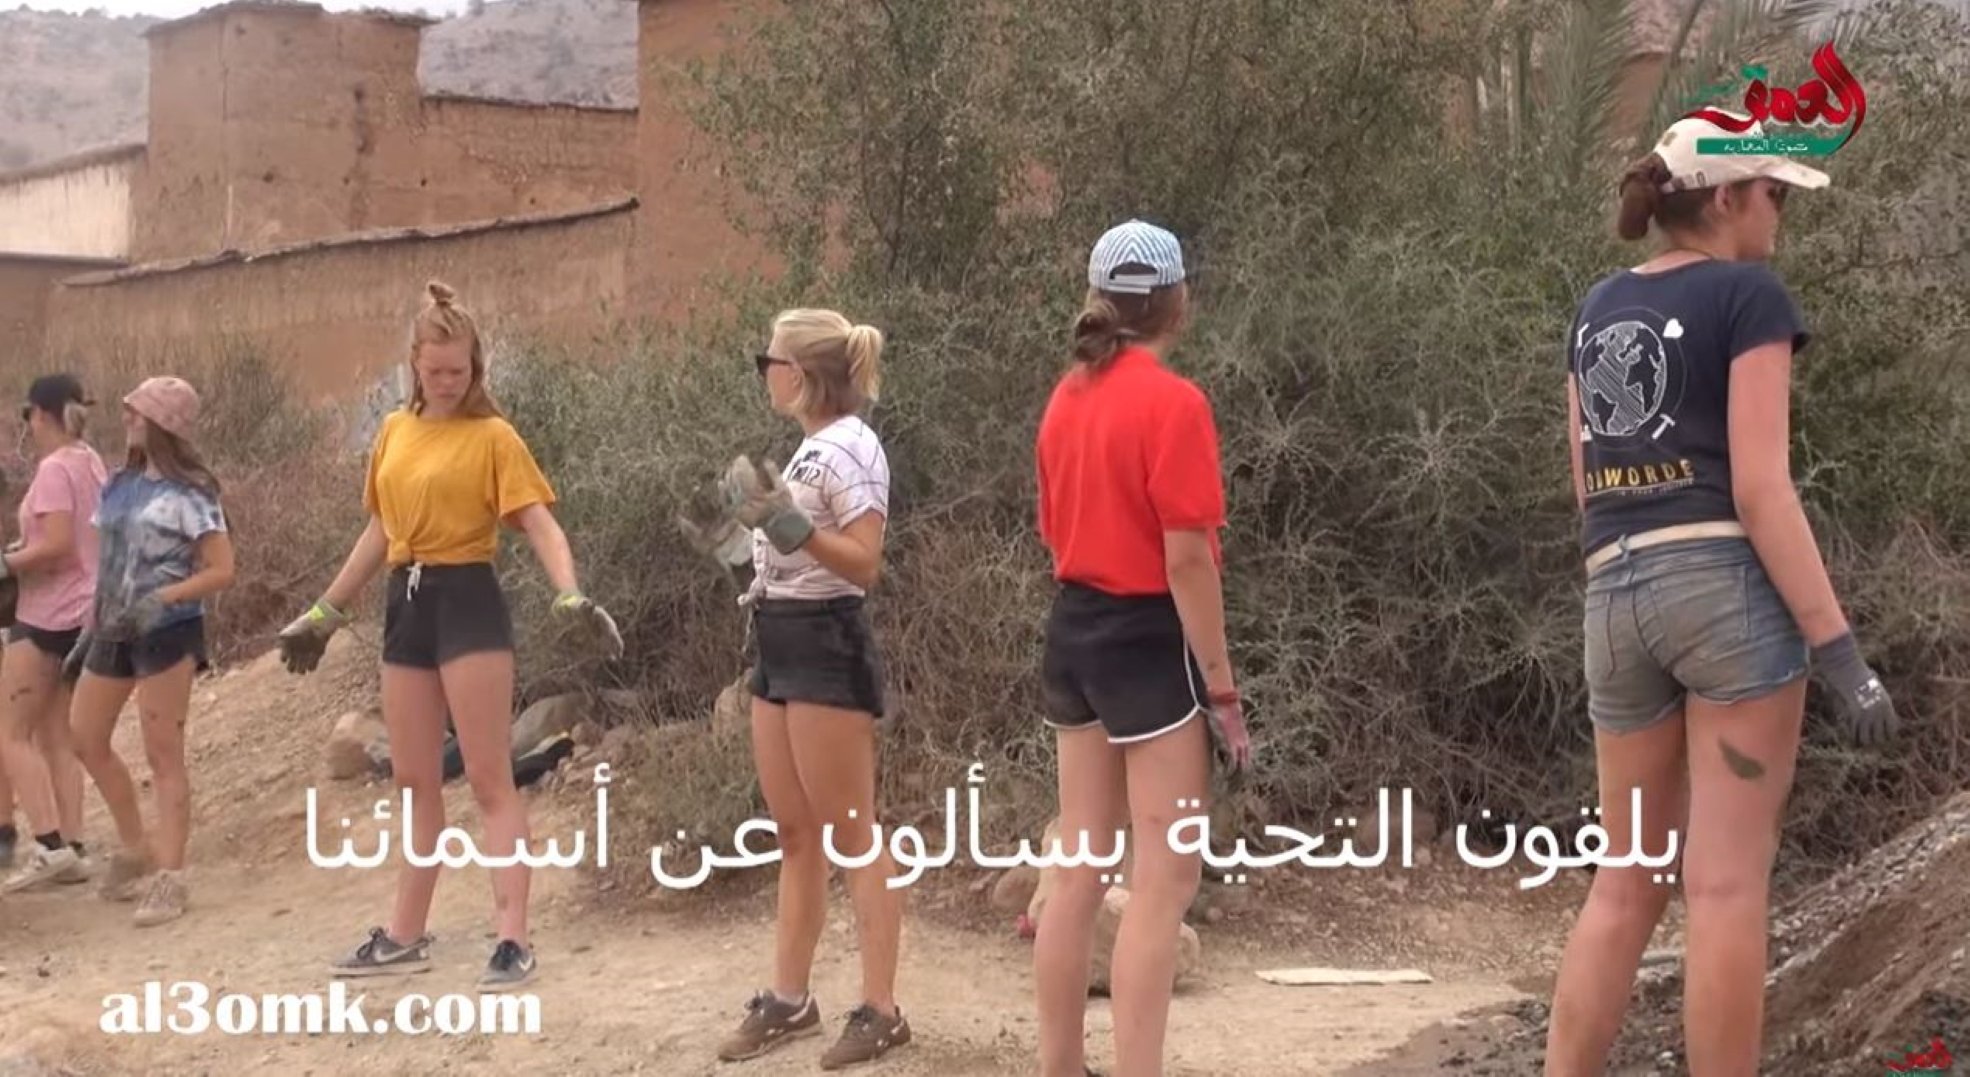 Impresentables amenaces de mort a unes voluntàries belgues al Marroc per dur 'shorts'